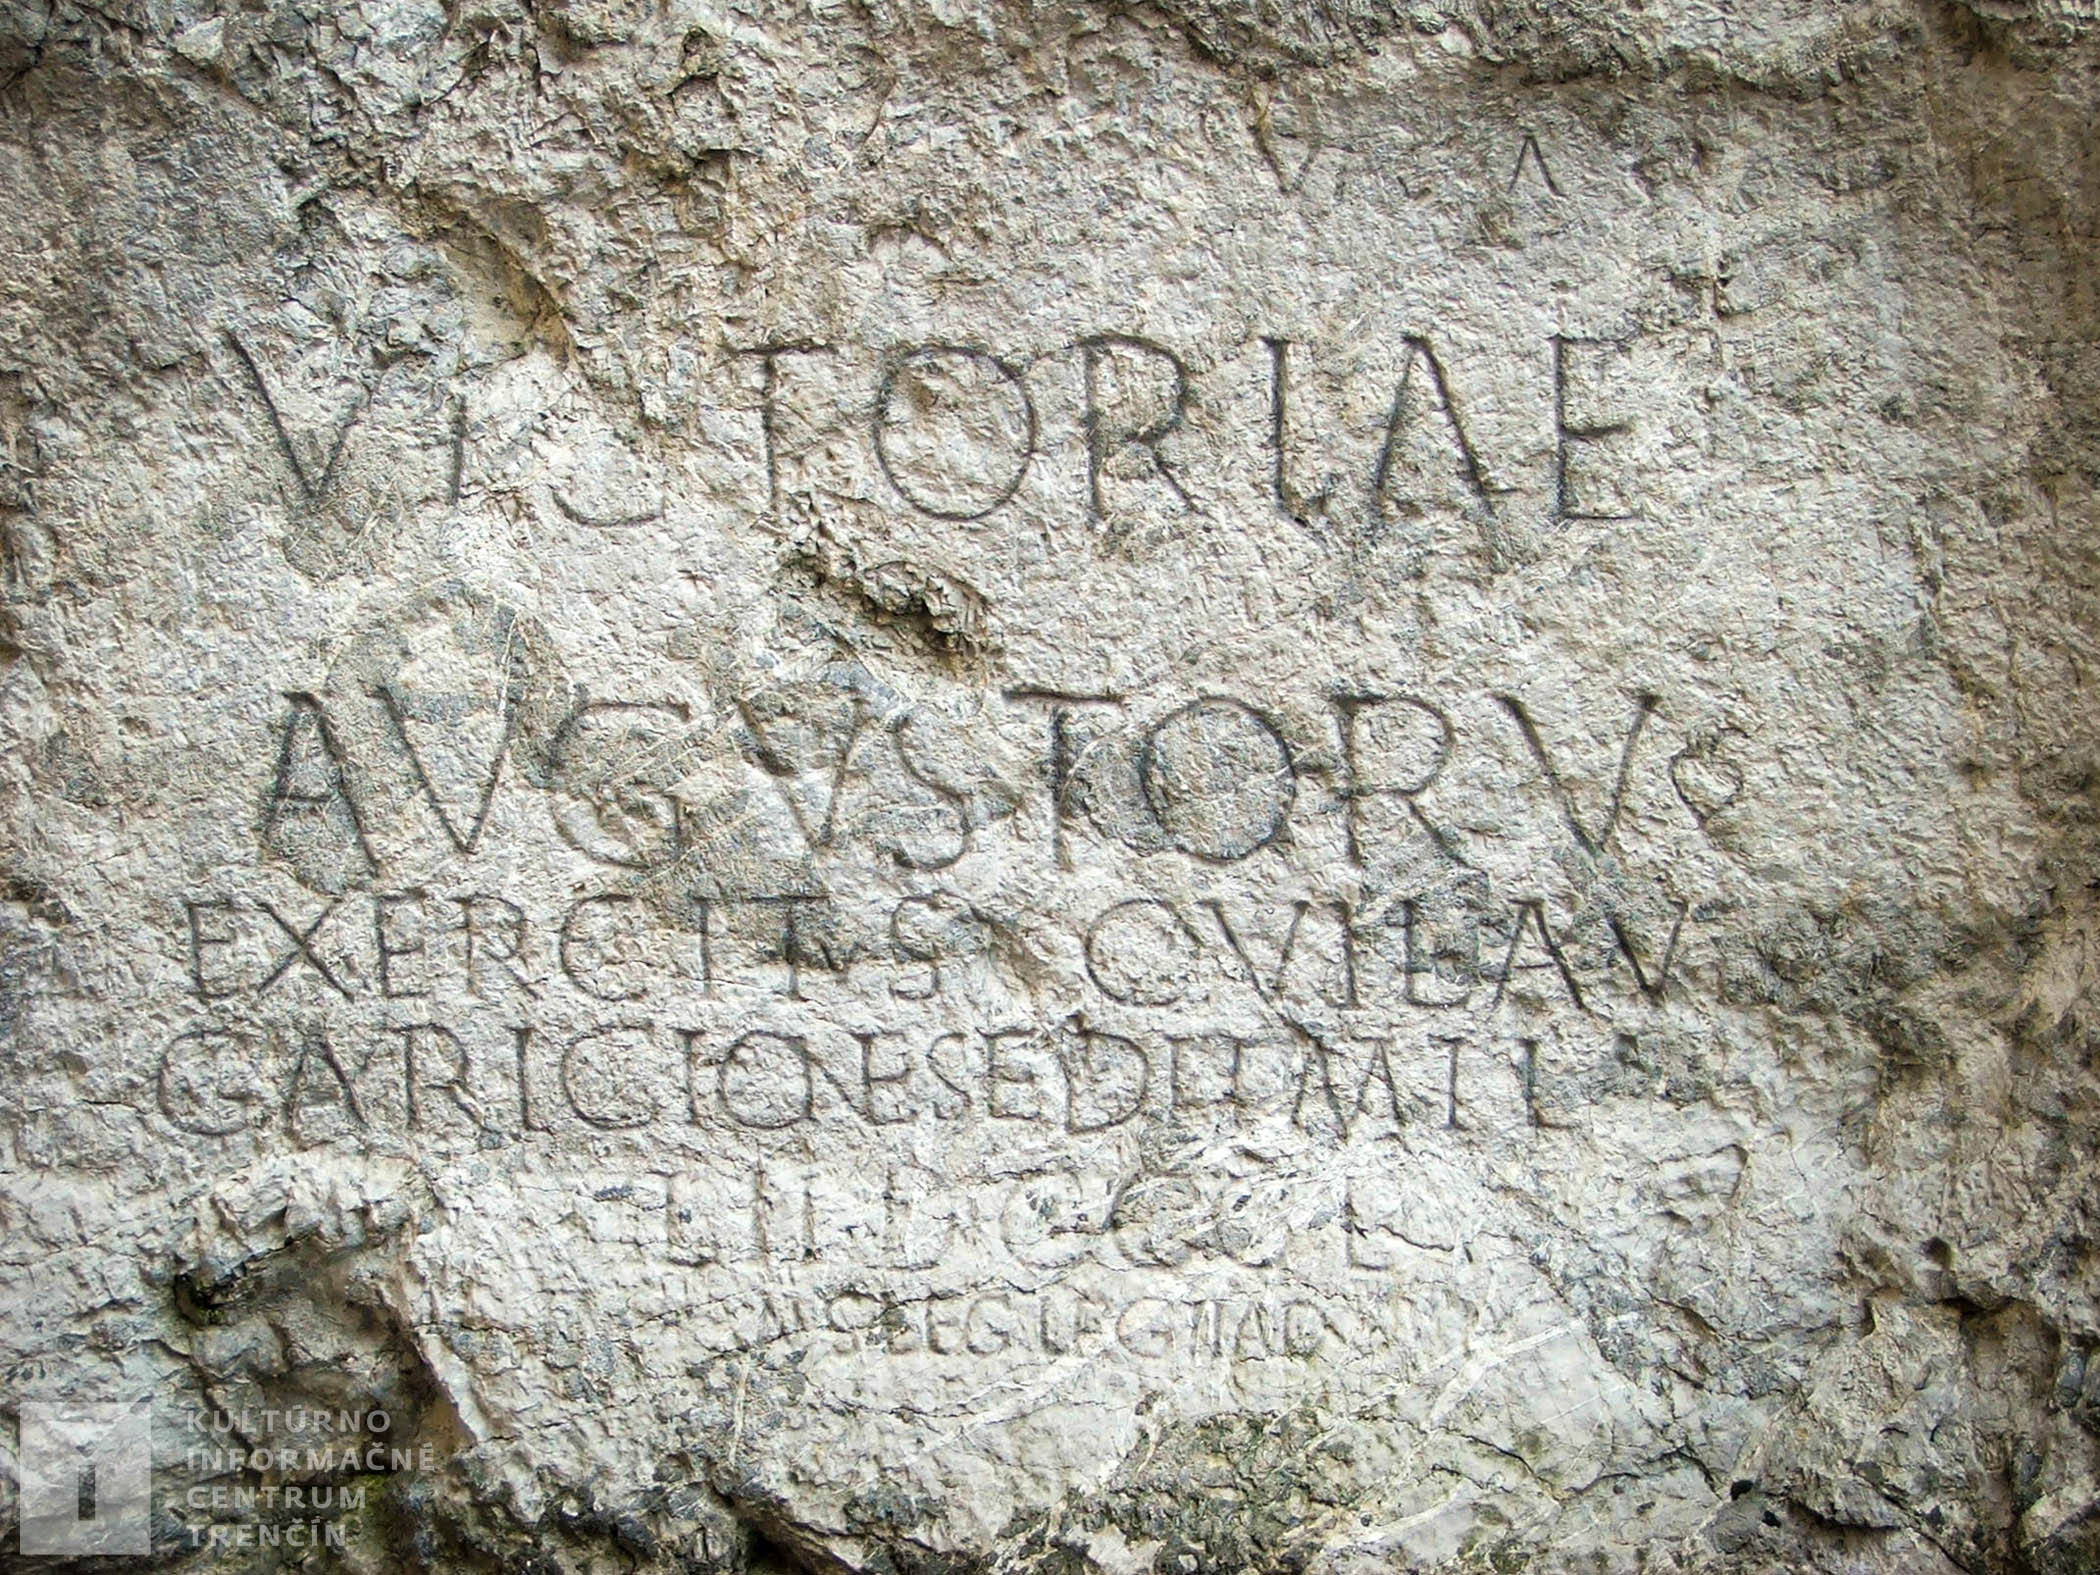 Rímsky nápis